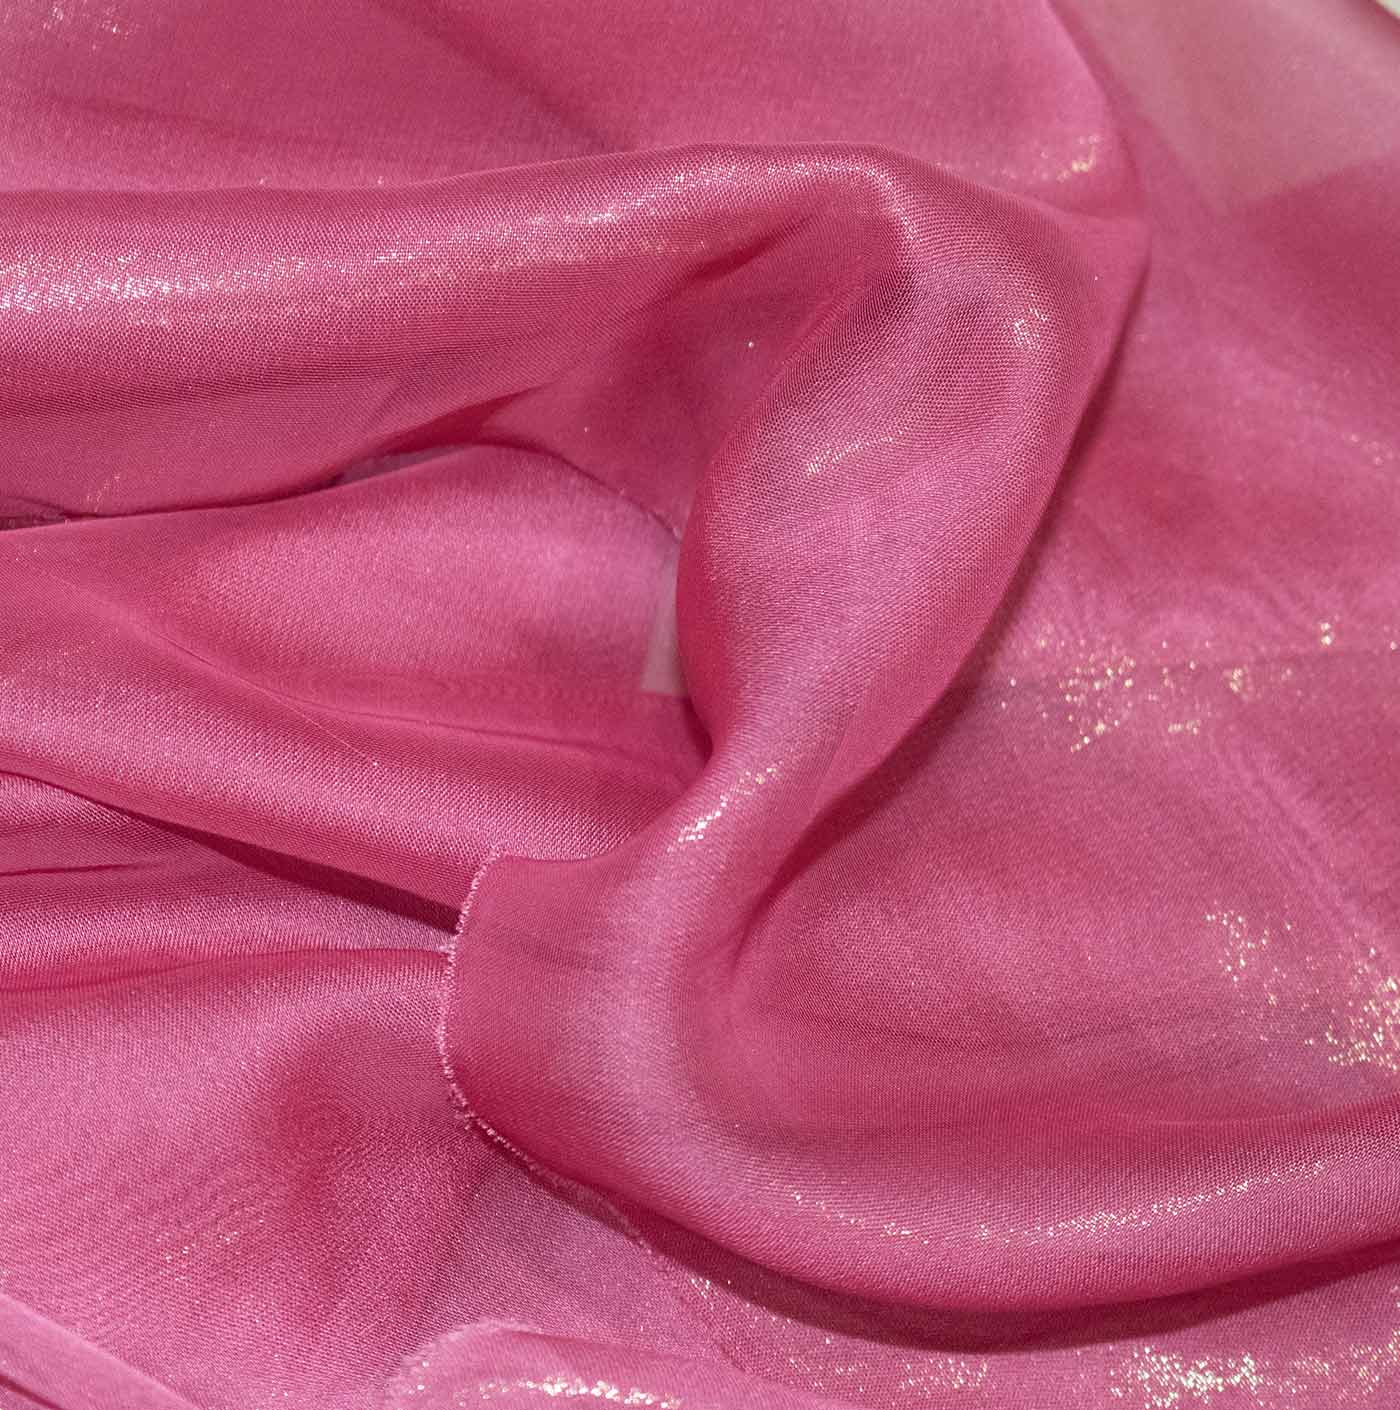 Blush Pink Cationic Chiffon Fabric